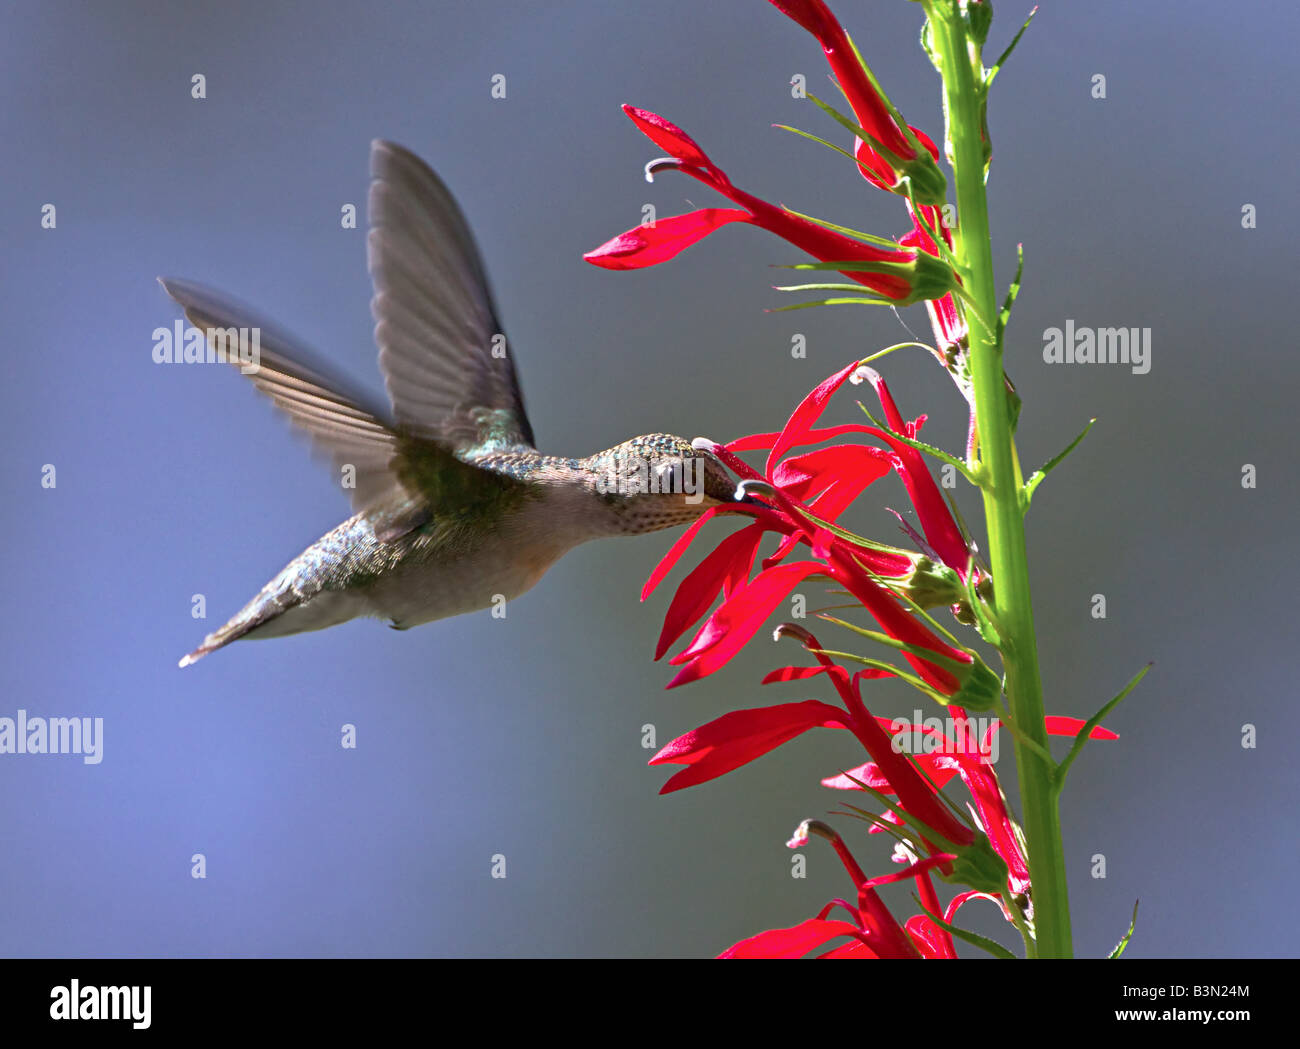 Ruby – Throated Kolibris füttern von rote Penstemon Blumen an einem Sommertag. Stockfoto